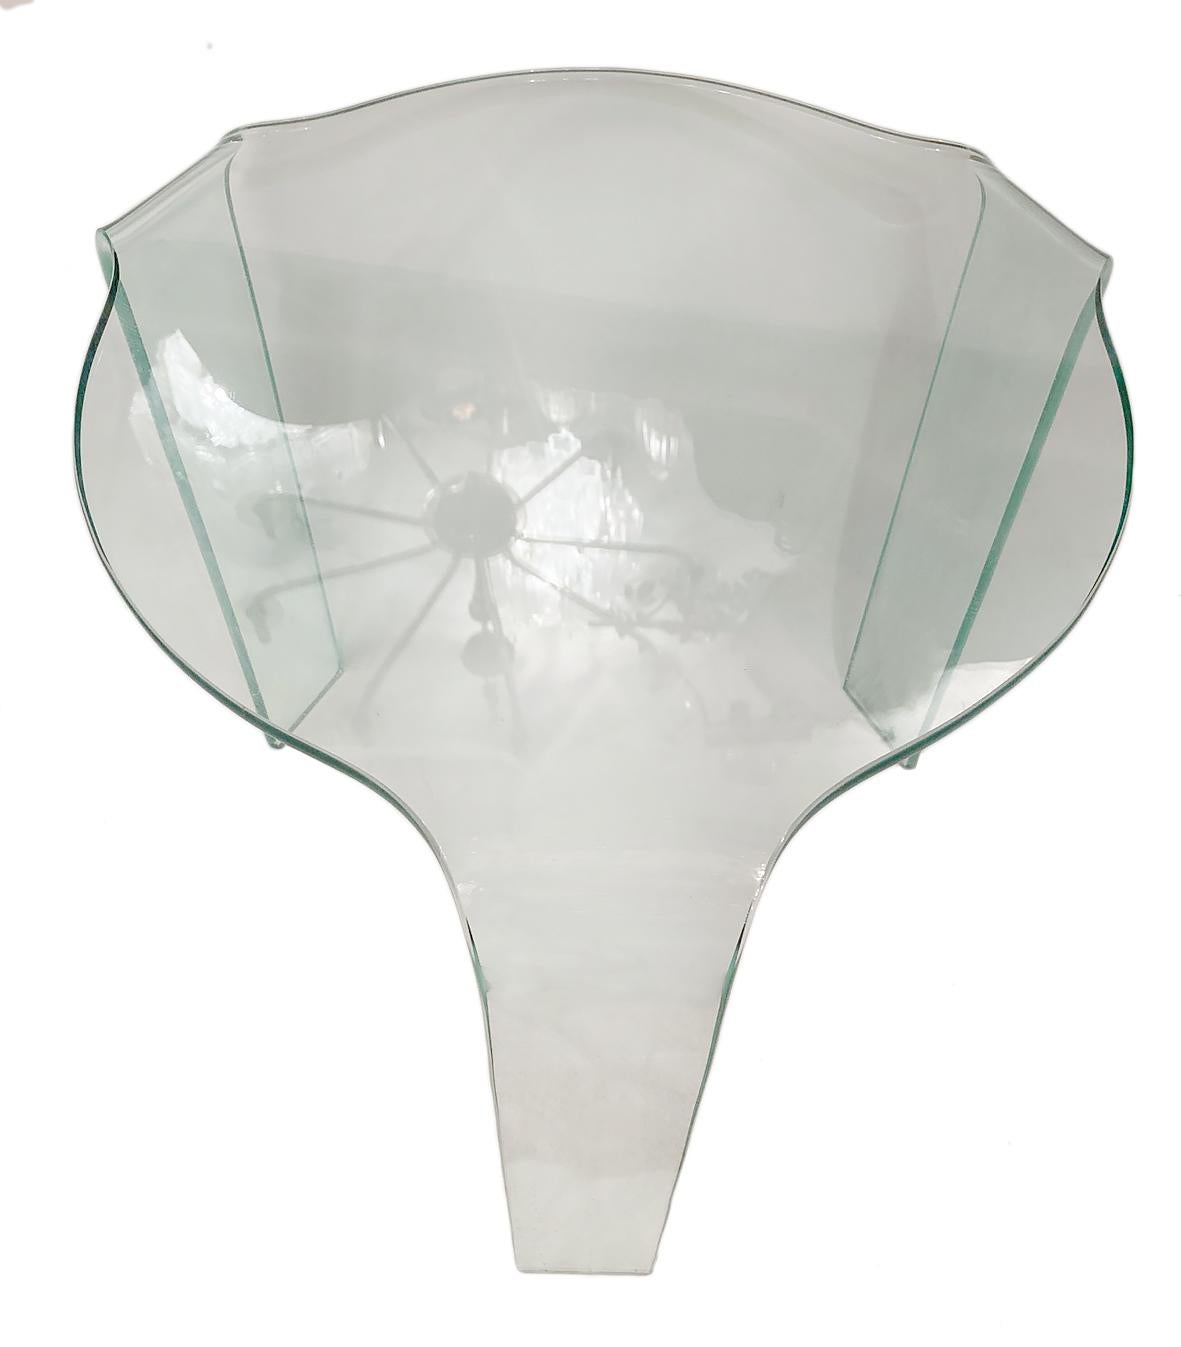 Table d'appoint tripode en verre, datant des années 1960.

Mesures :
Hauteur 19.5